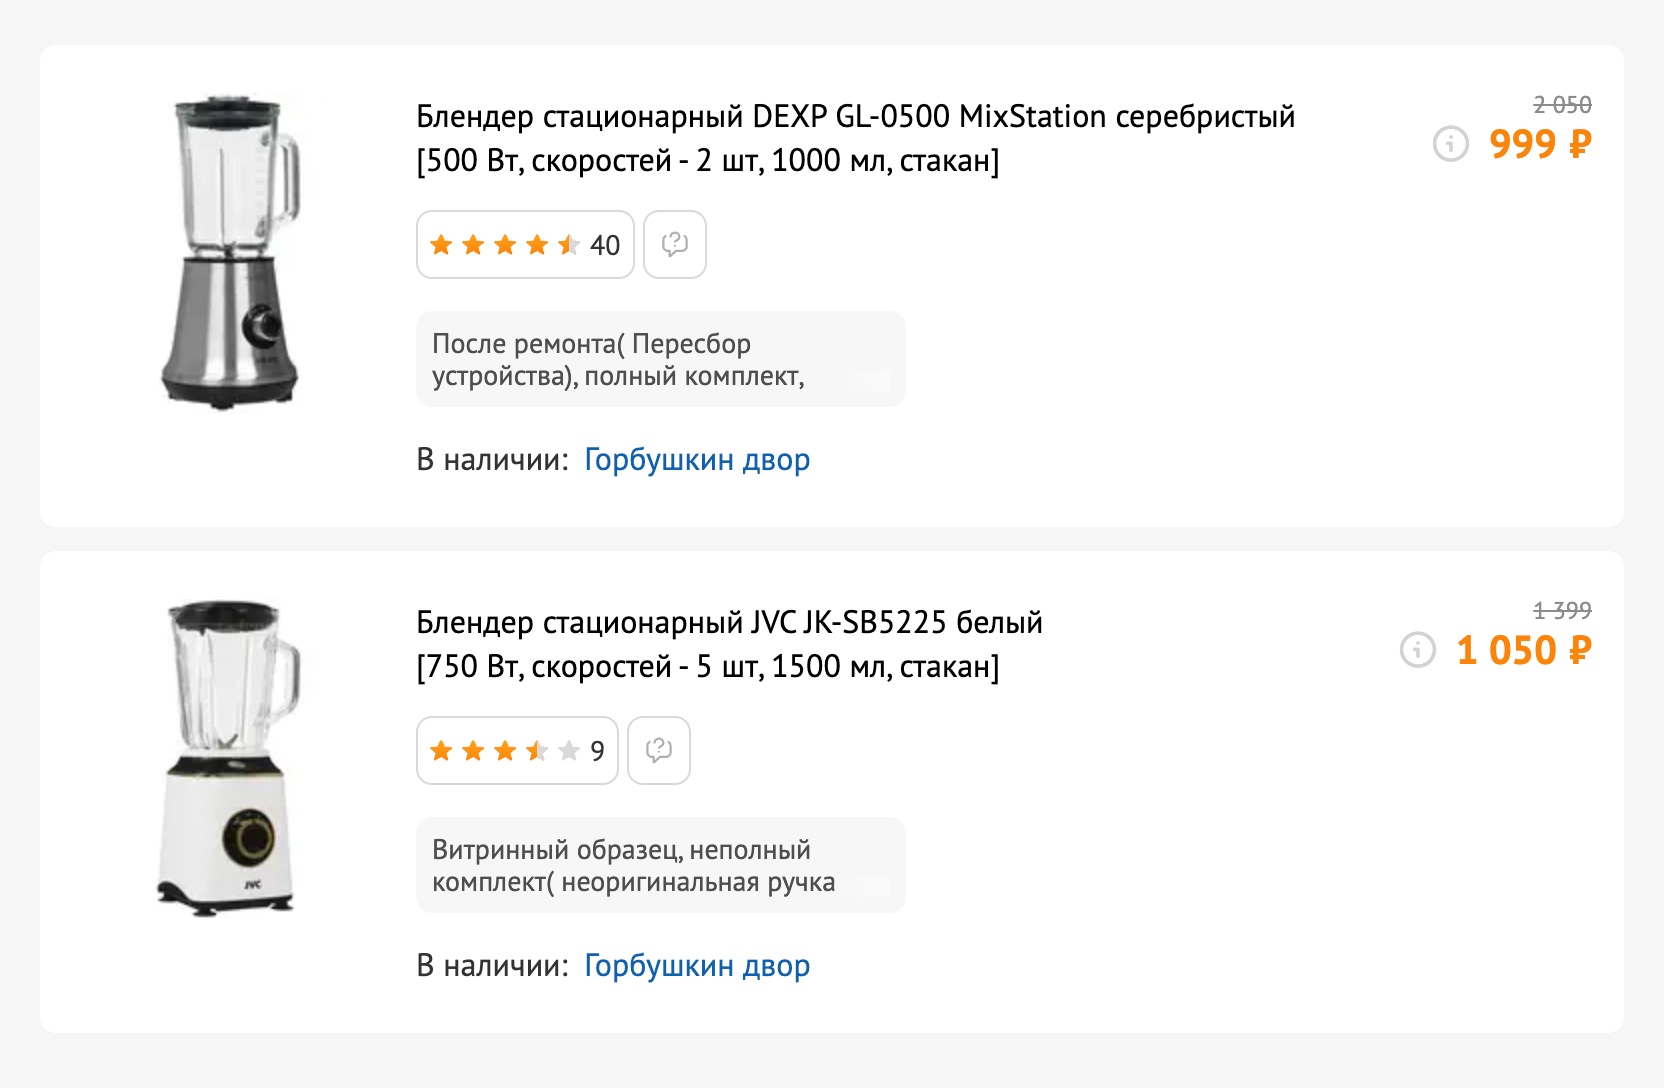 Витринные образцы в разделе уценки на сайте. Скидка — больше 50%. Источник: dns⁠-⁠shop.ru